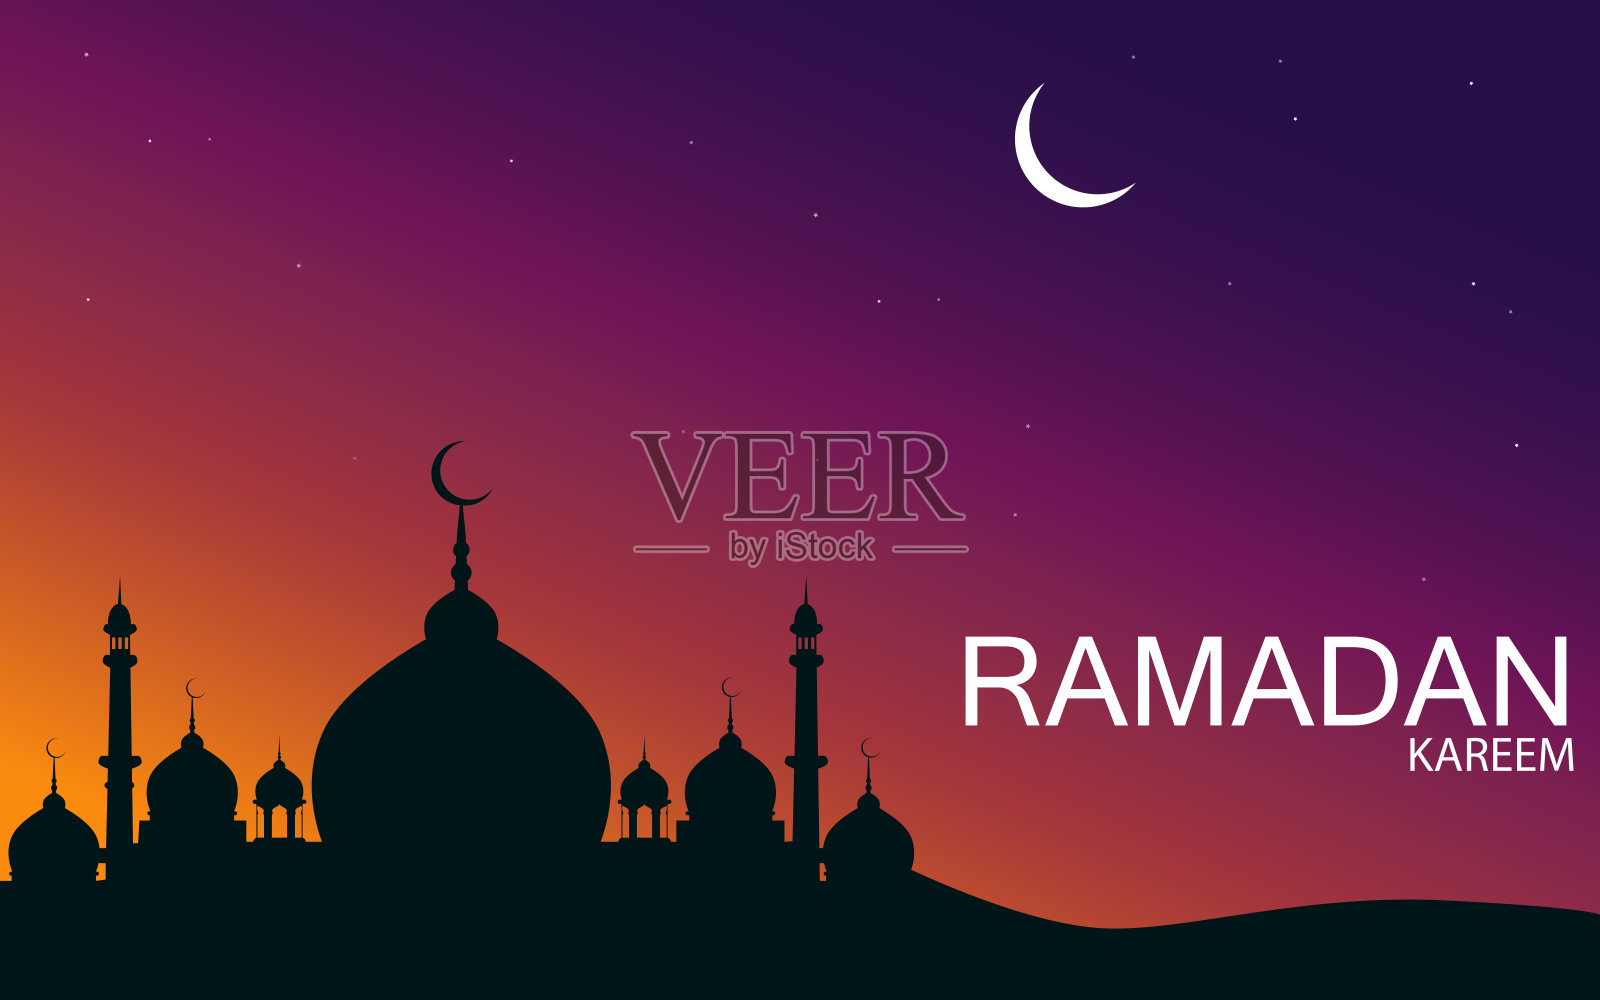 一个清真寺和拉姆丹卡里姆月亮在天空的背景插画图片素材